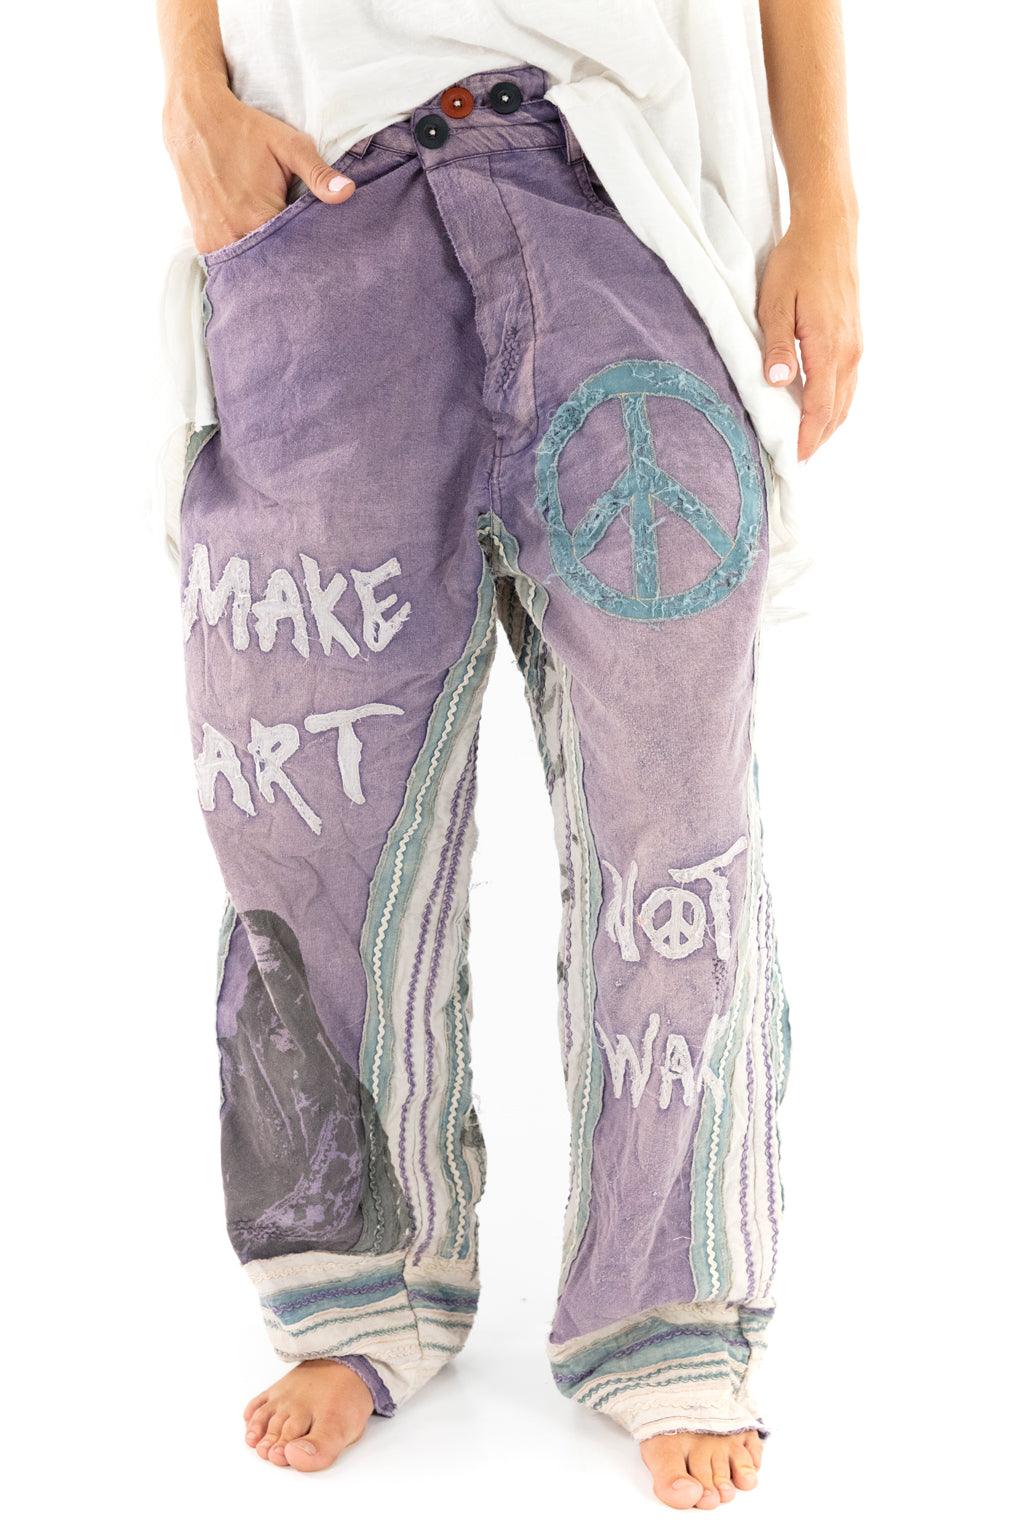 Make Art Not War Pants